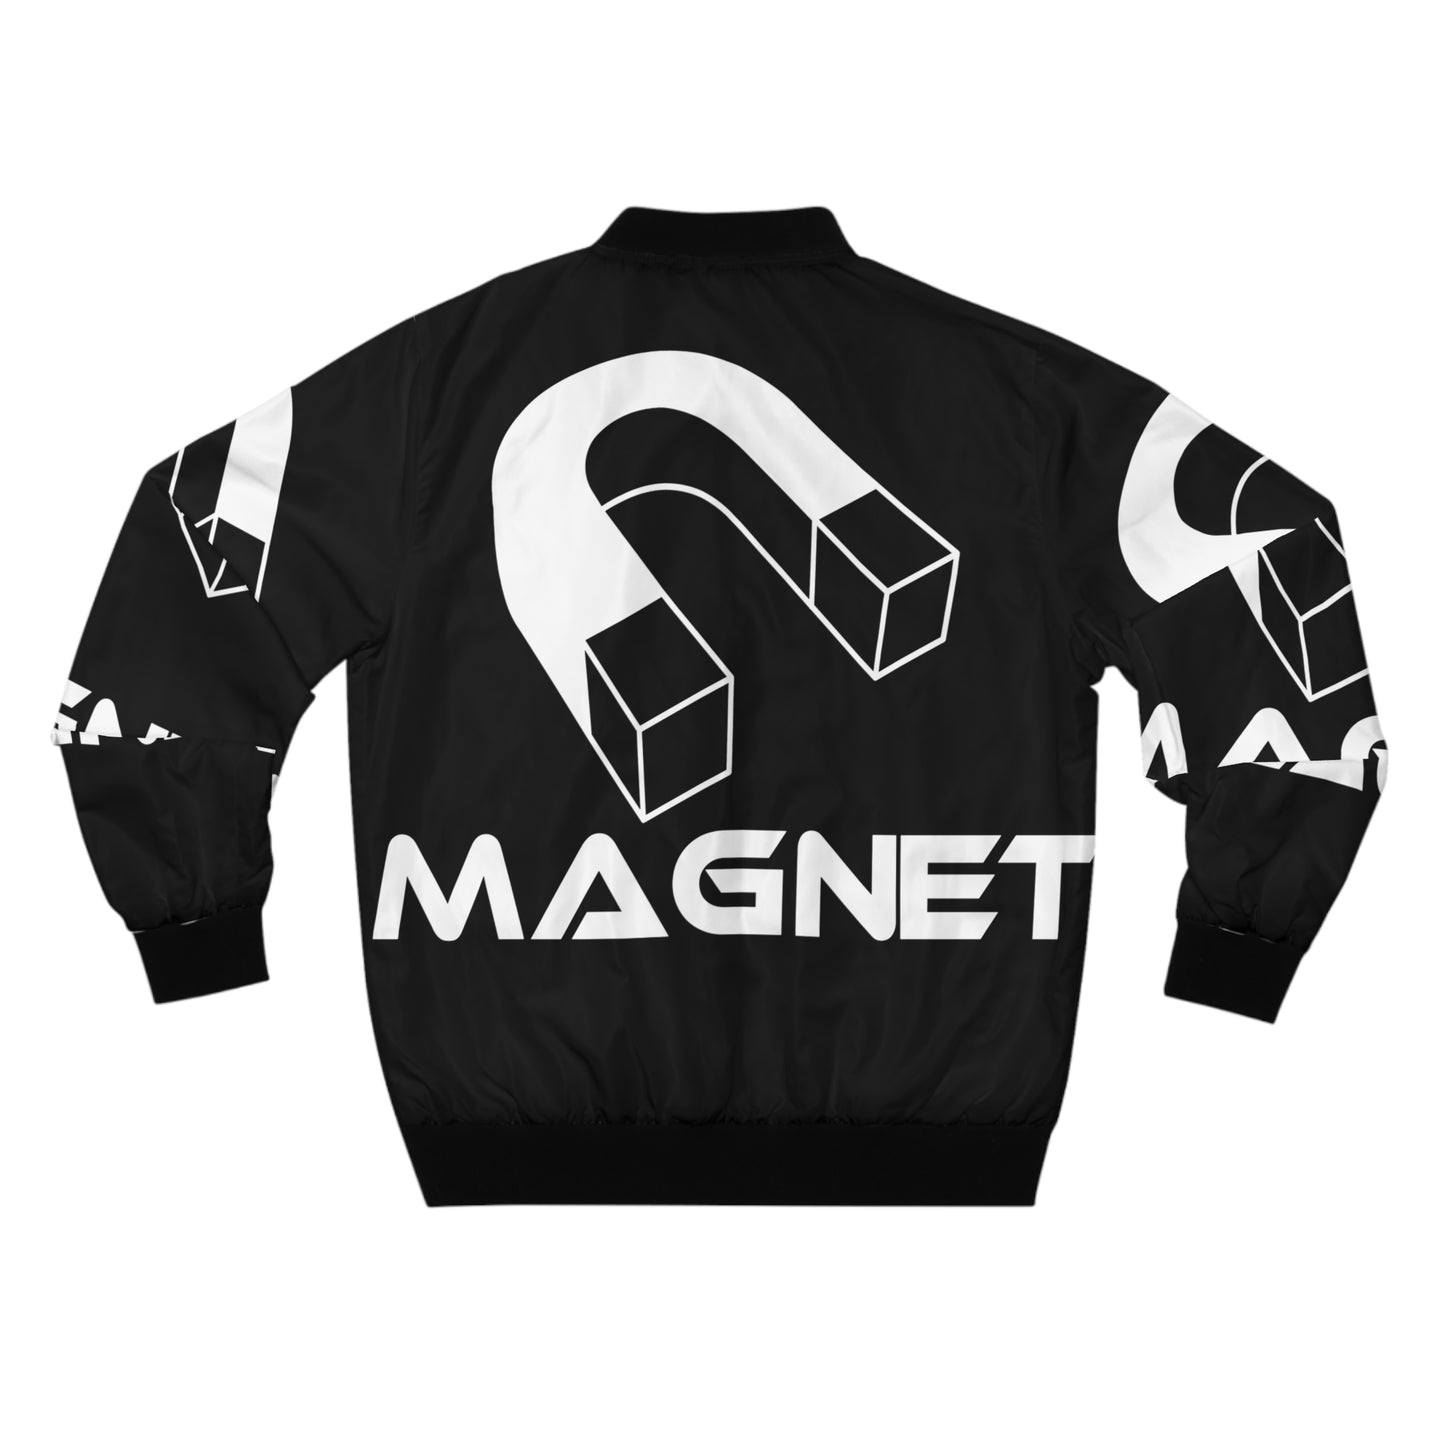 Magnet Rider Men's AOP Bomber Jacket